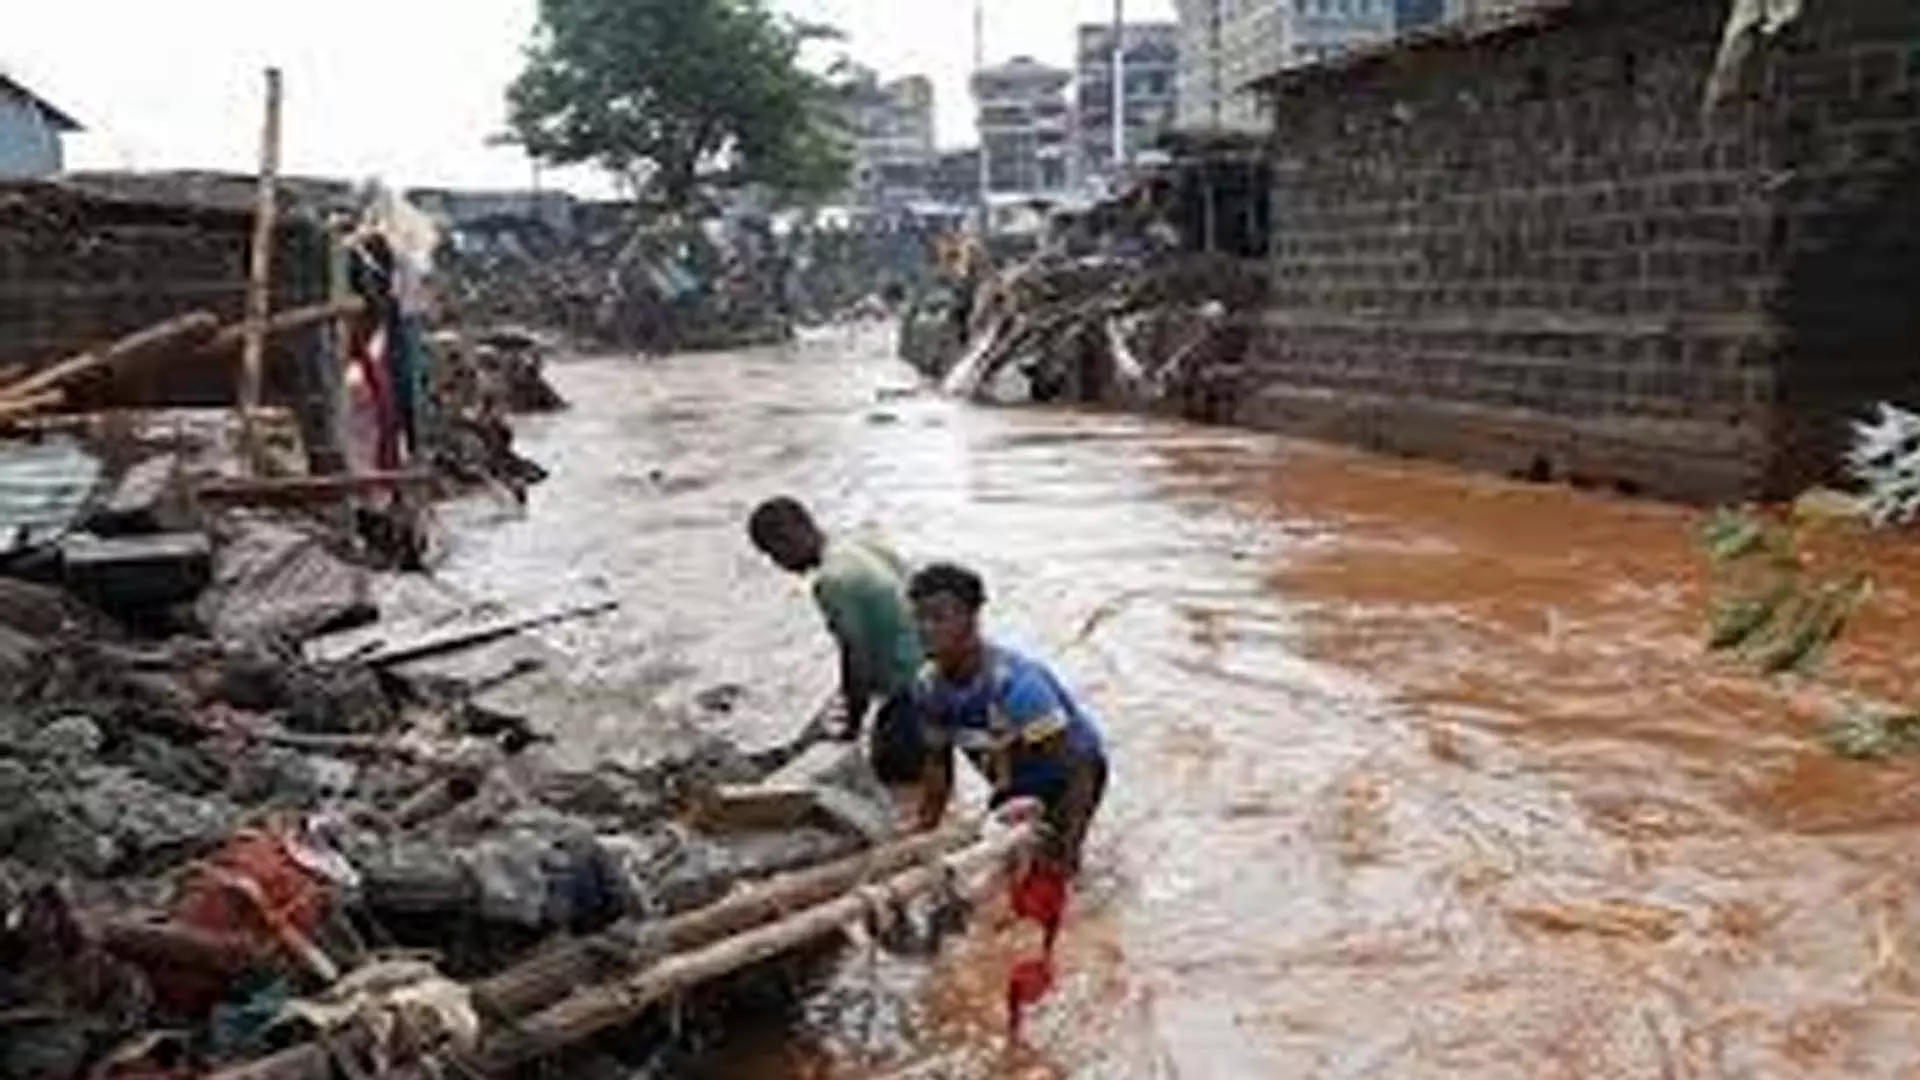 केन्या माई माहिउ क्षेत्र में बाढ़ से 20 लोगों की मौत हो गई